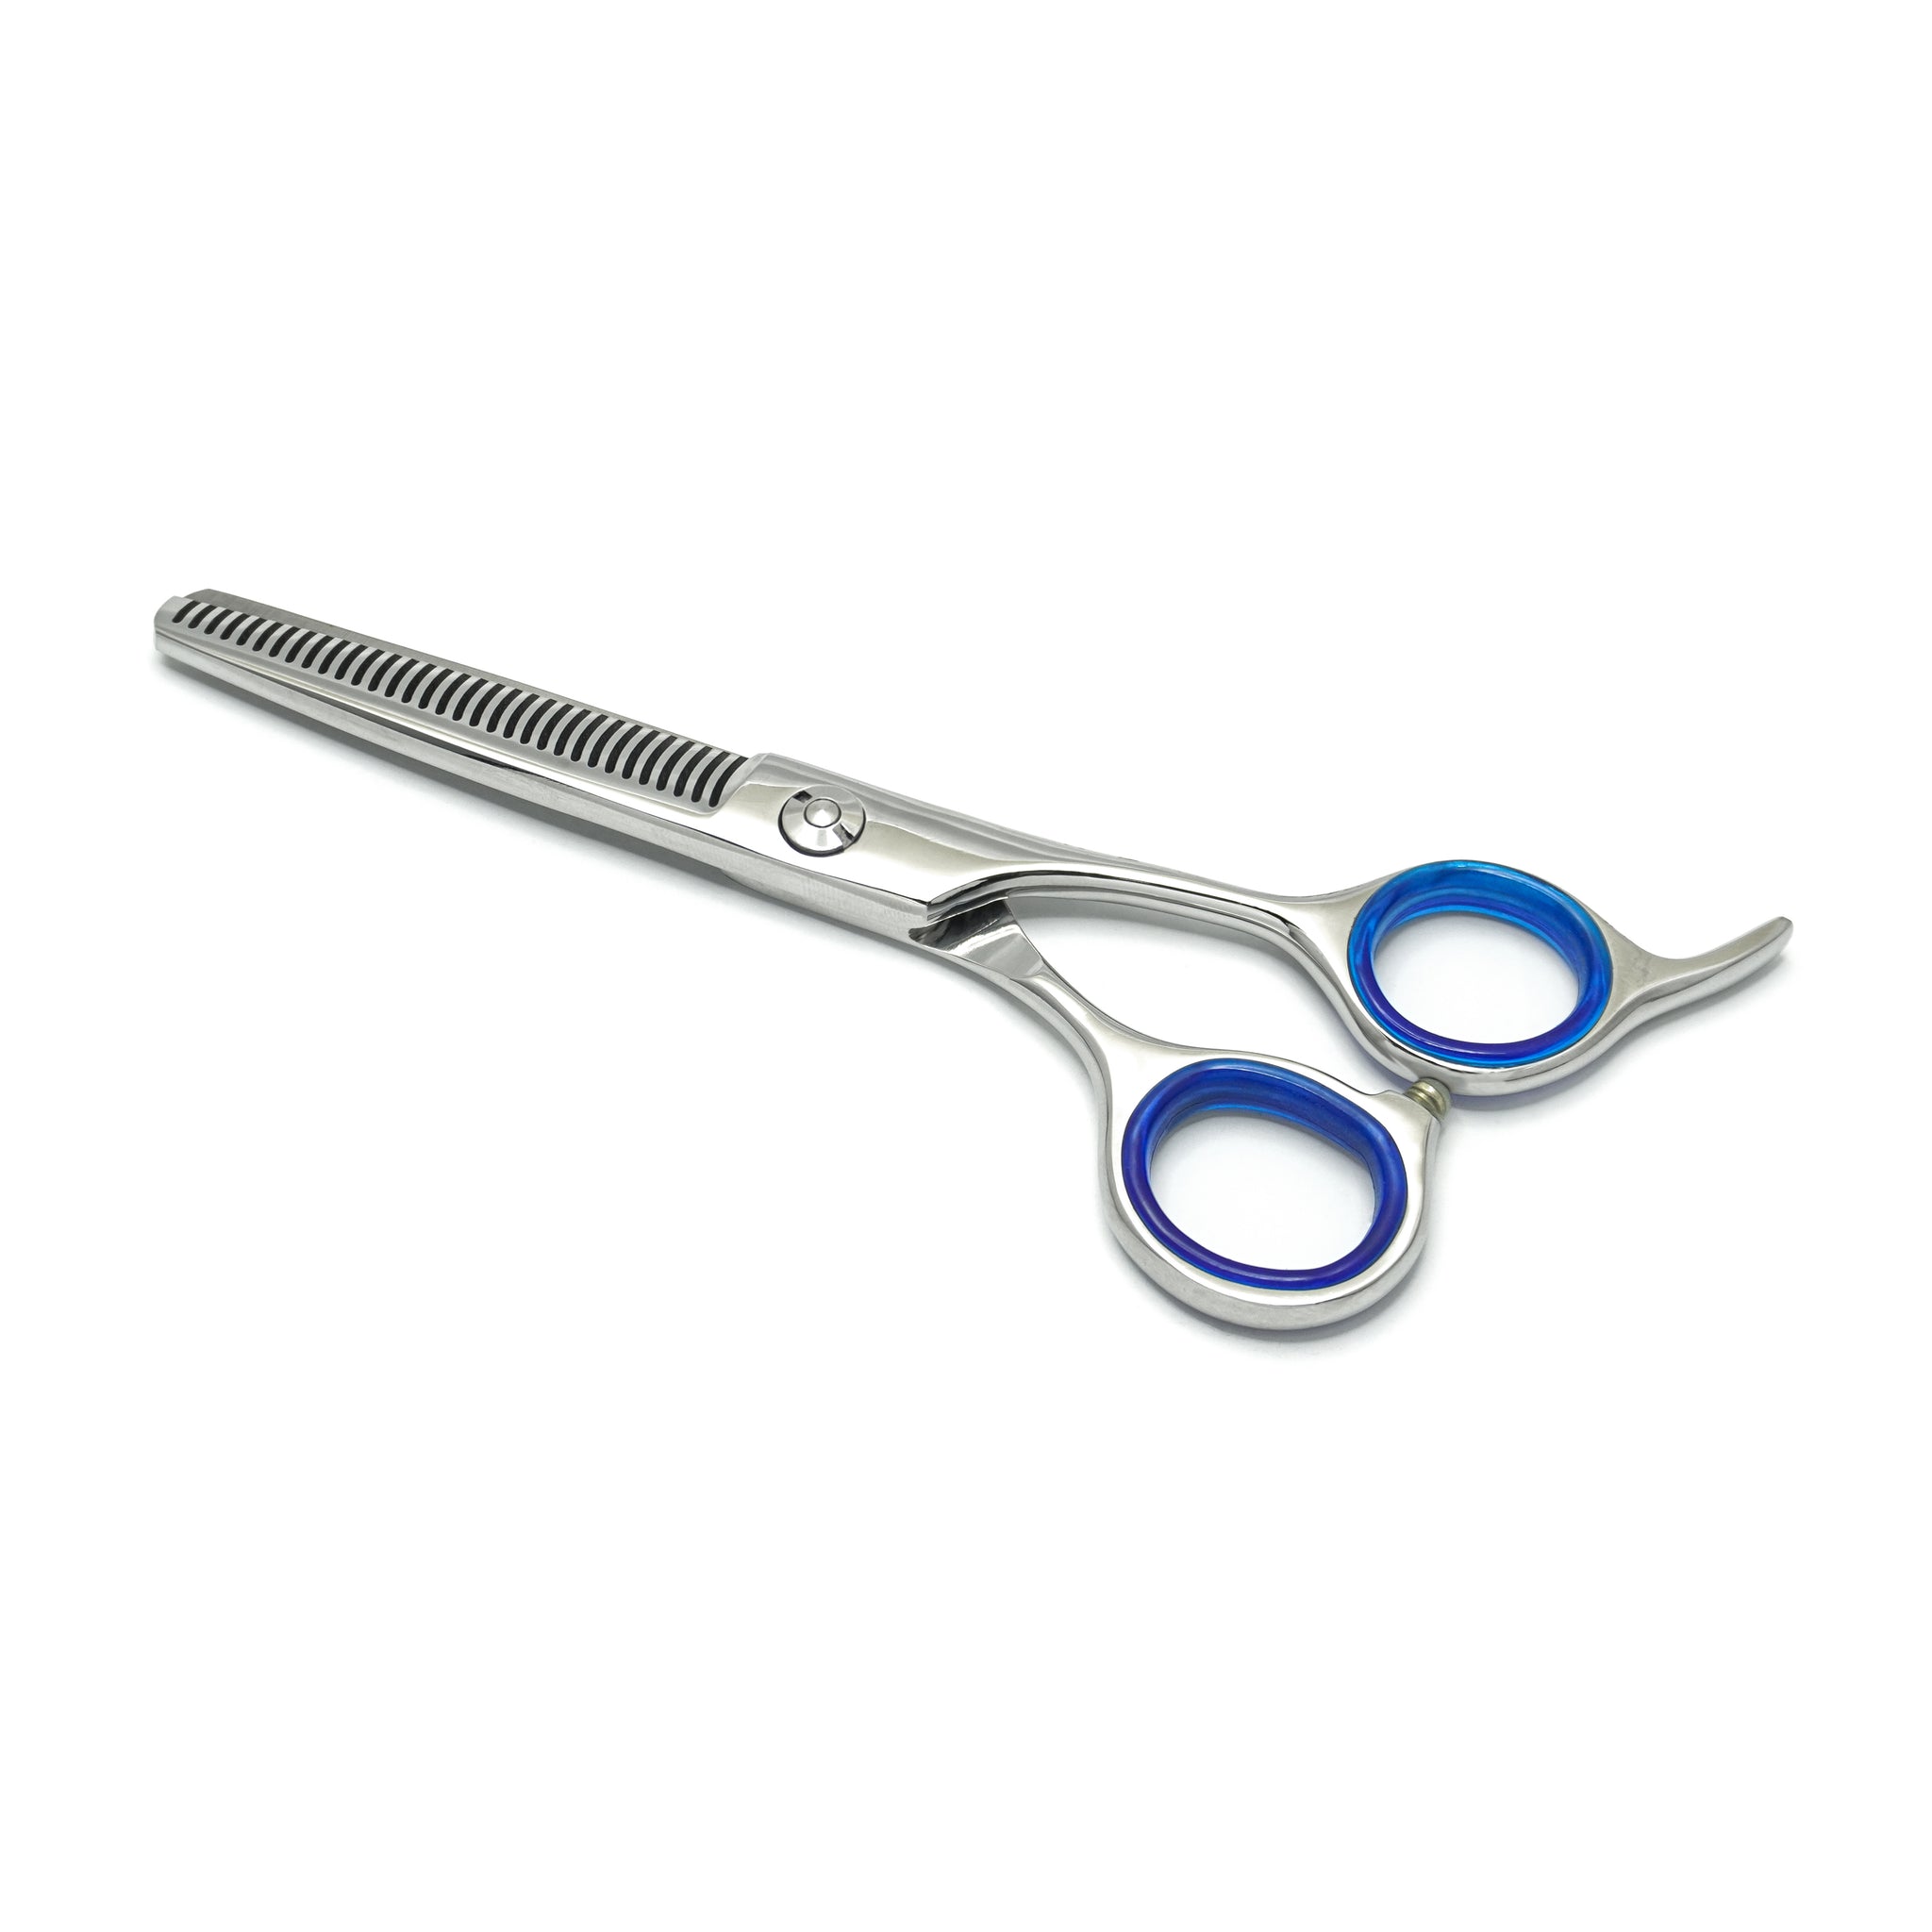 Friseur-Effilierschere: Professionelles Salon-Haarschneidewerkzeug MI-018